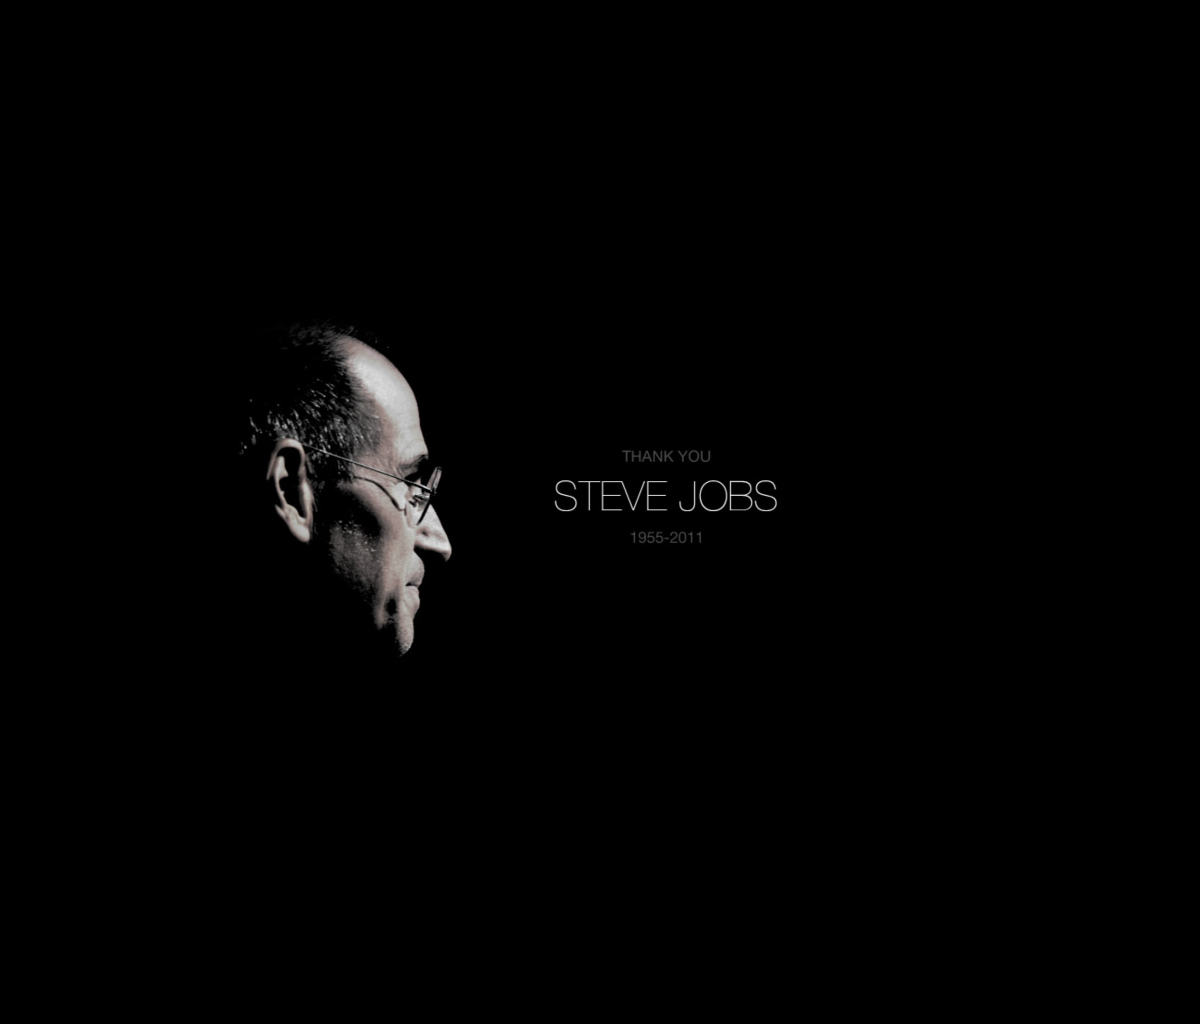 Thank you Steve Jobs screenshot #1 1200x1024